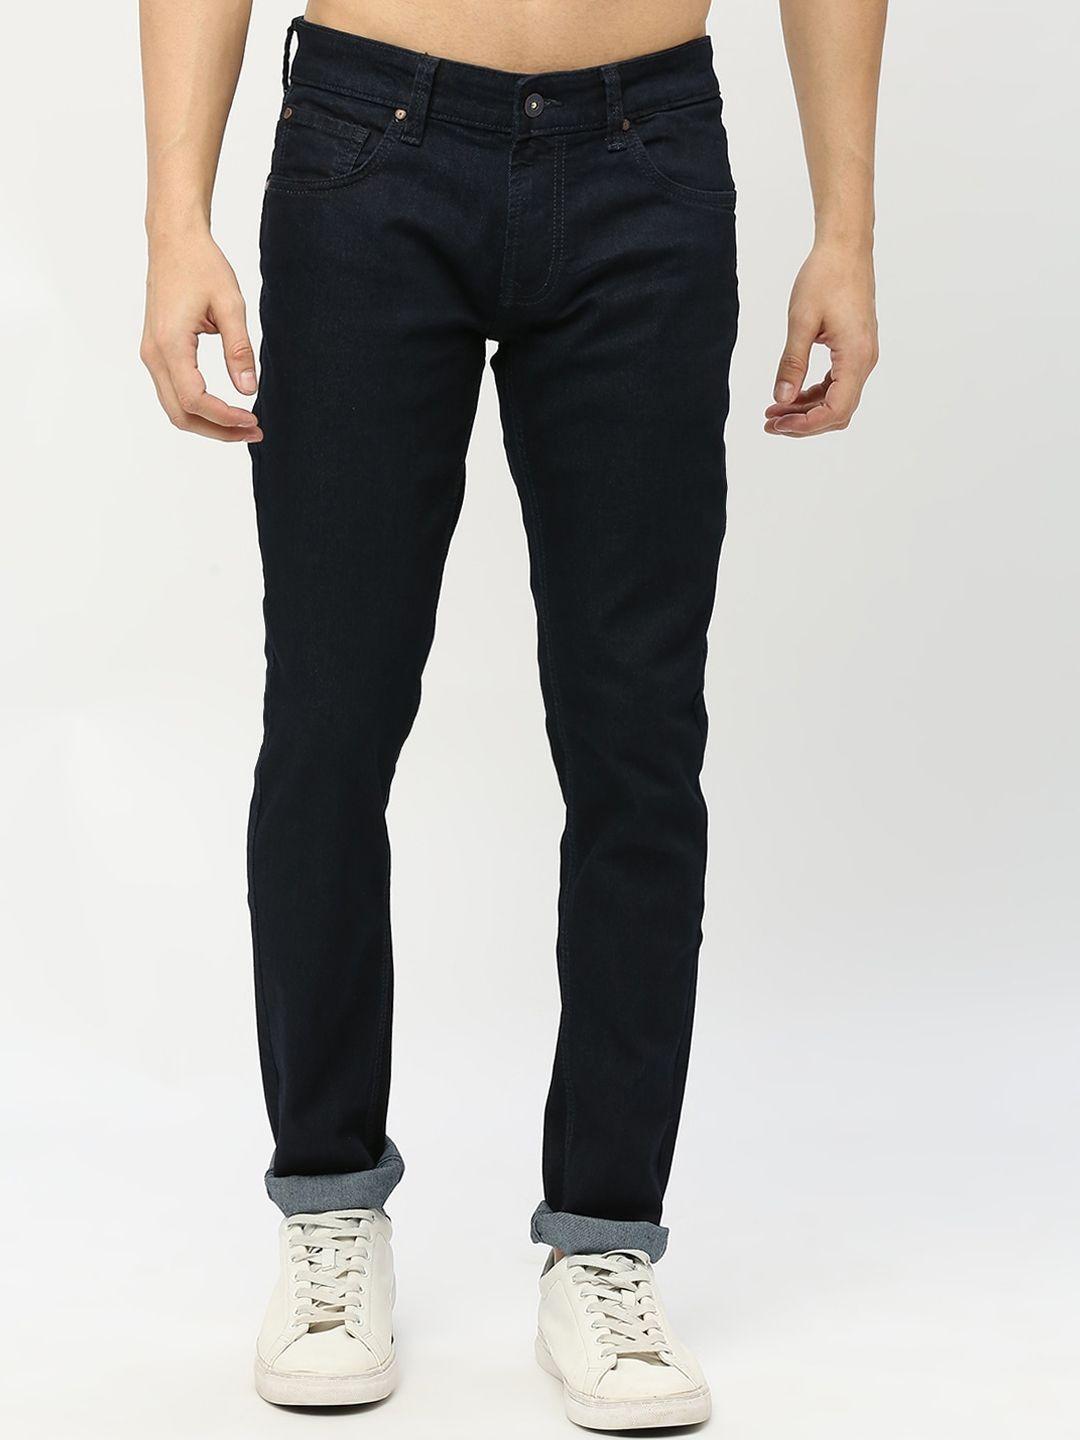 spykar-men-slim-fit-low-rise-stretchable-cotton-jeans